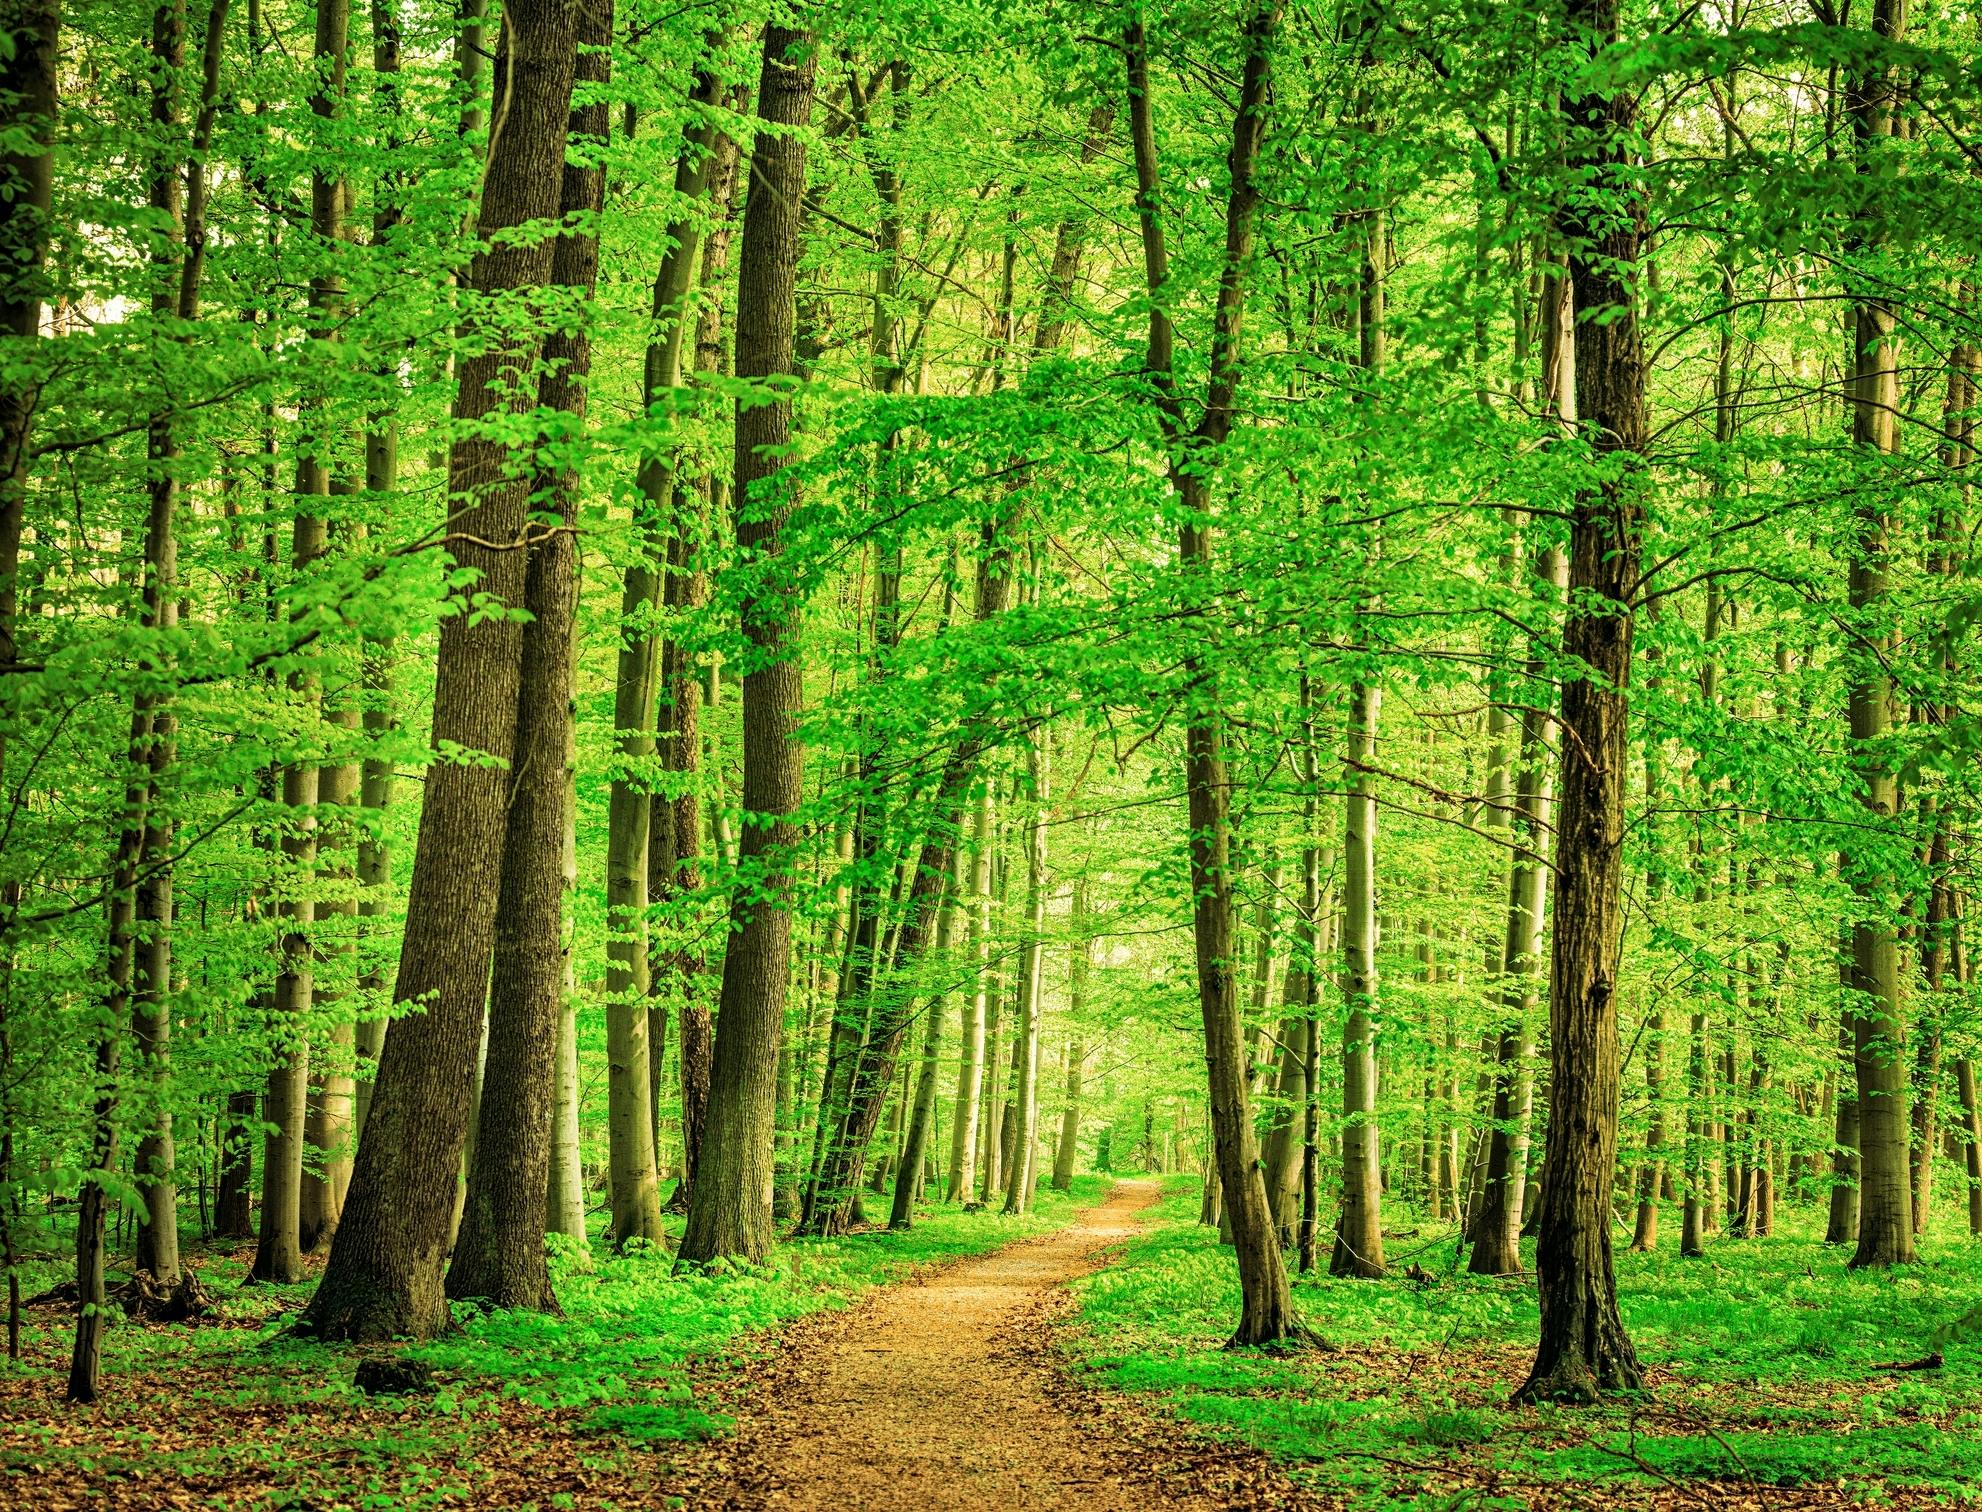 Ein grüner Laubwald, durch den ein kleiner Weg führt.